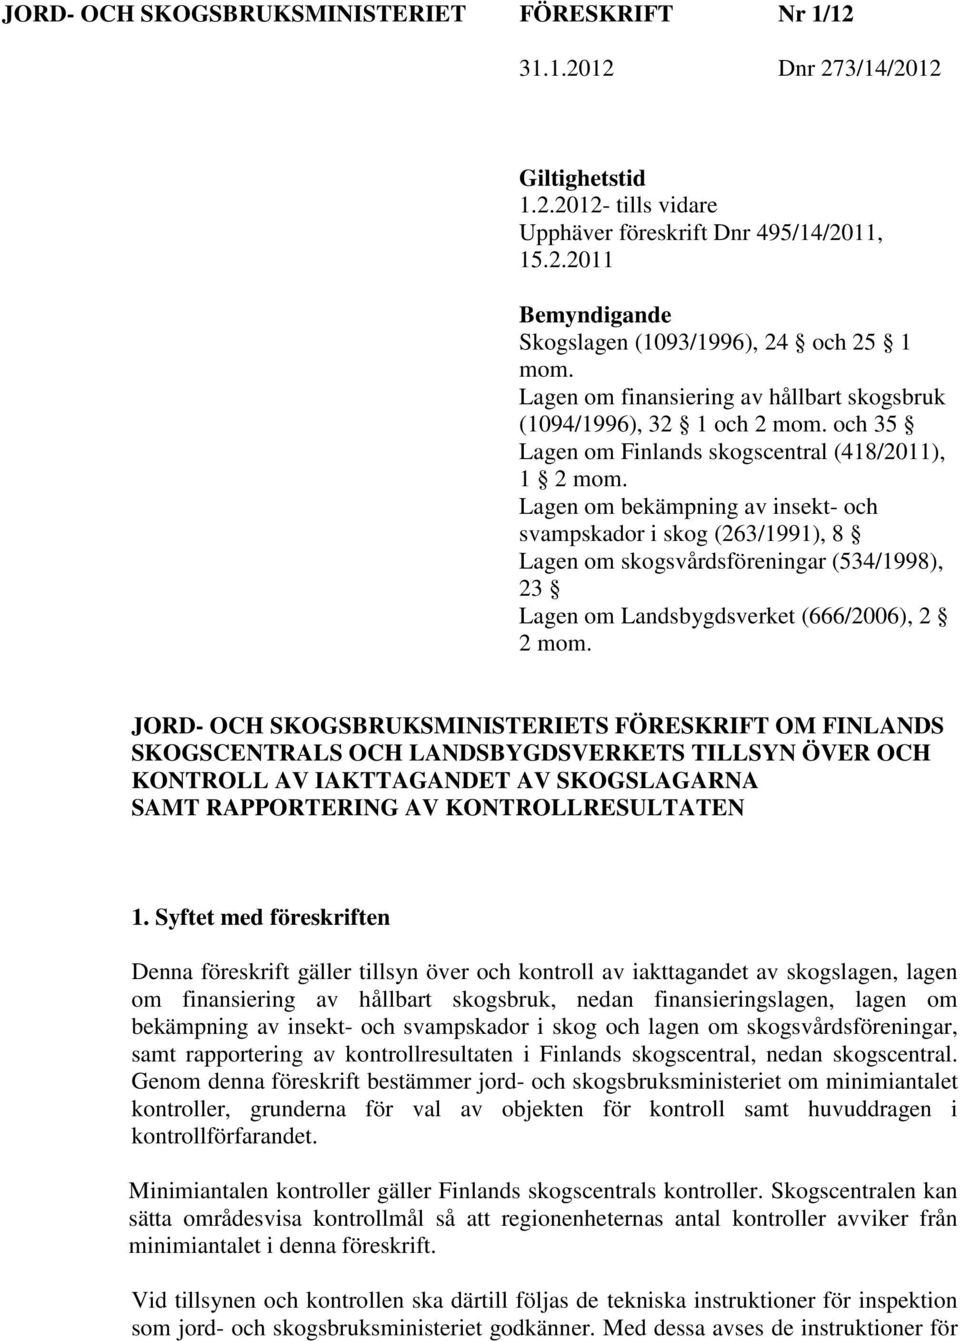 Lagen om bekämpning av insekt- och svampskador i skog (263/1991), 8 Lagen om skogsvårdsföreningar (534/1998), 23 Lagen om Landsbygdsverket (666/2006), 2 2 mom.